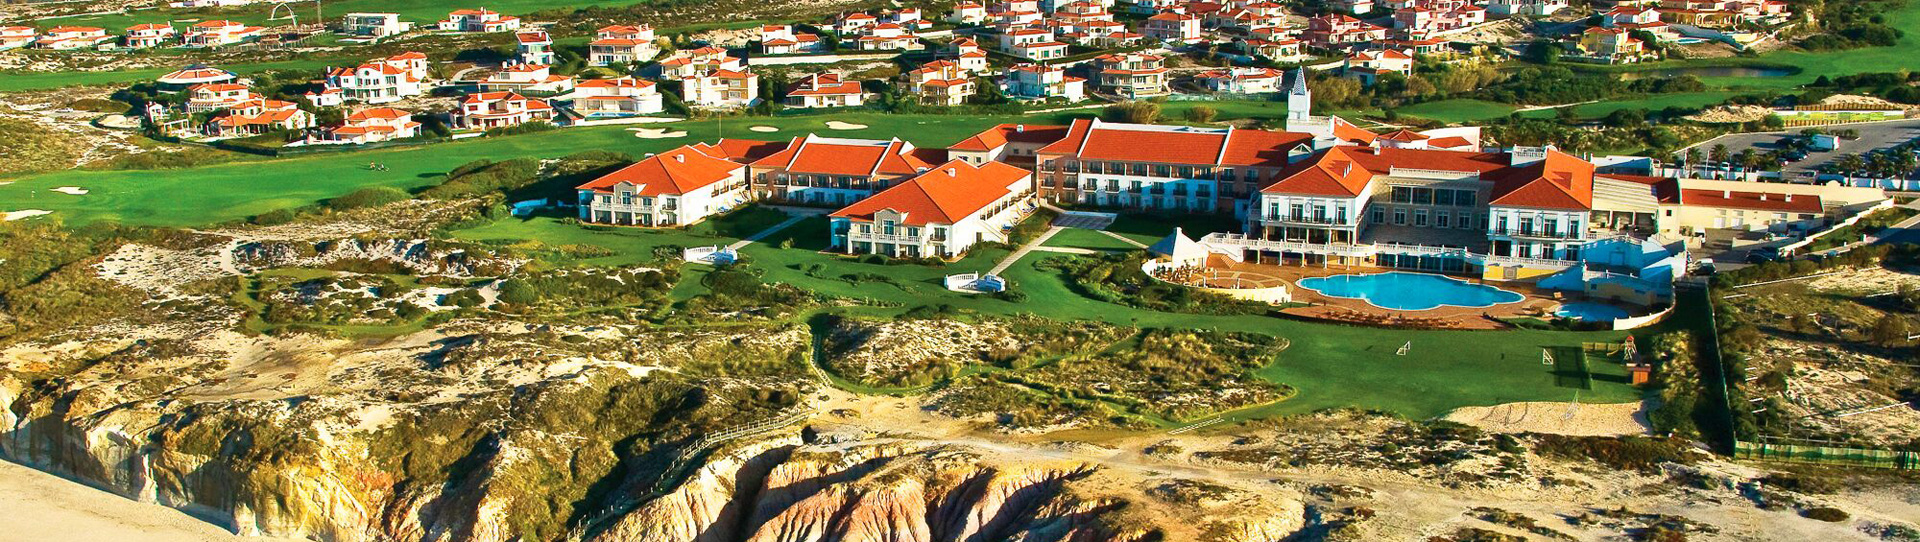 Portugal golf holidays - Praia Del Rey Marriott Golf & Beach Resort - Photo 3